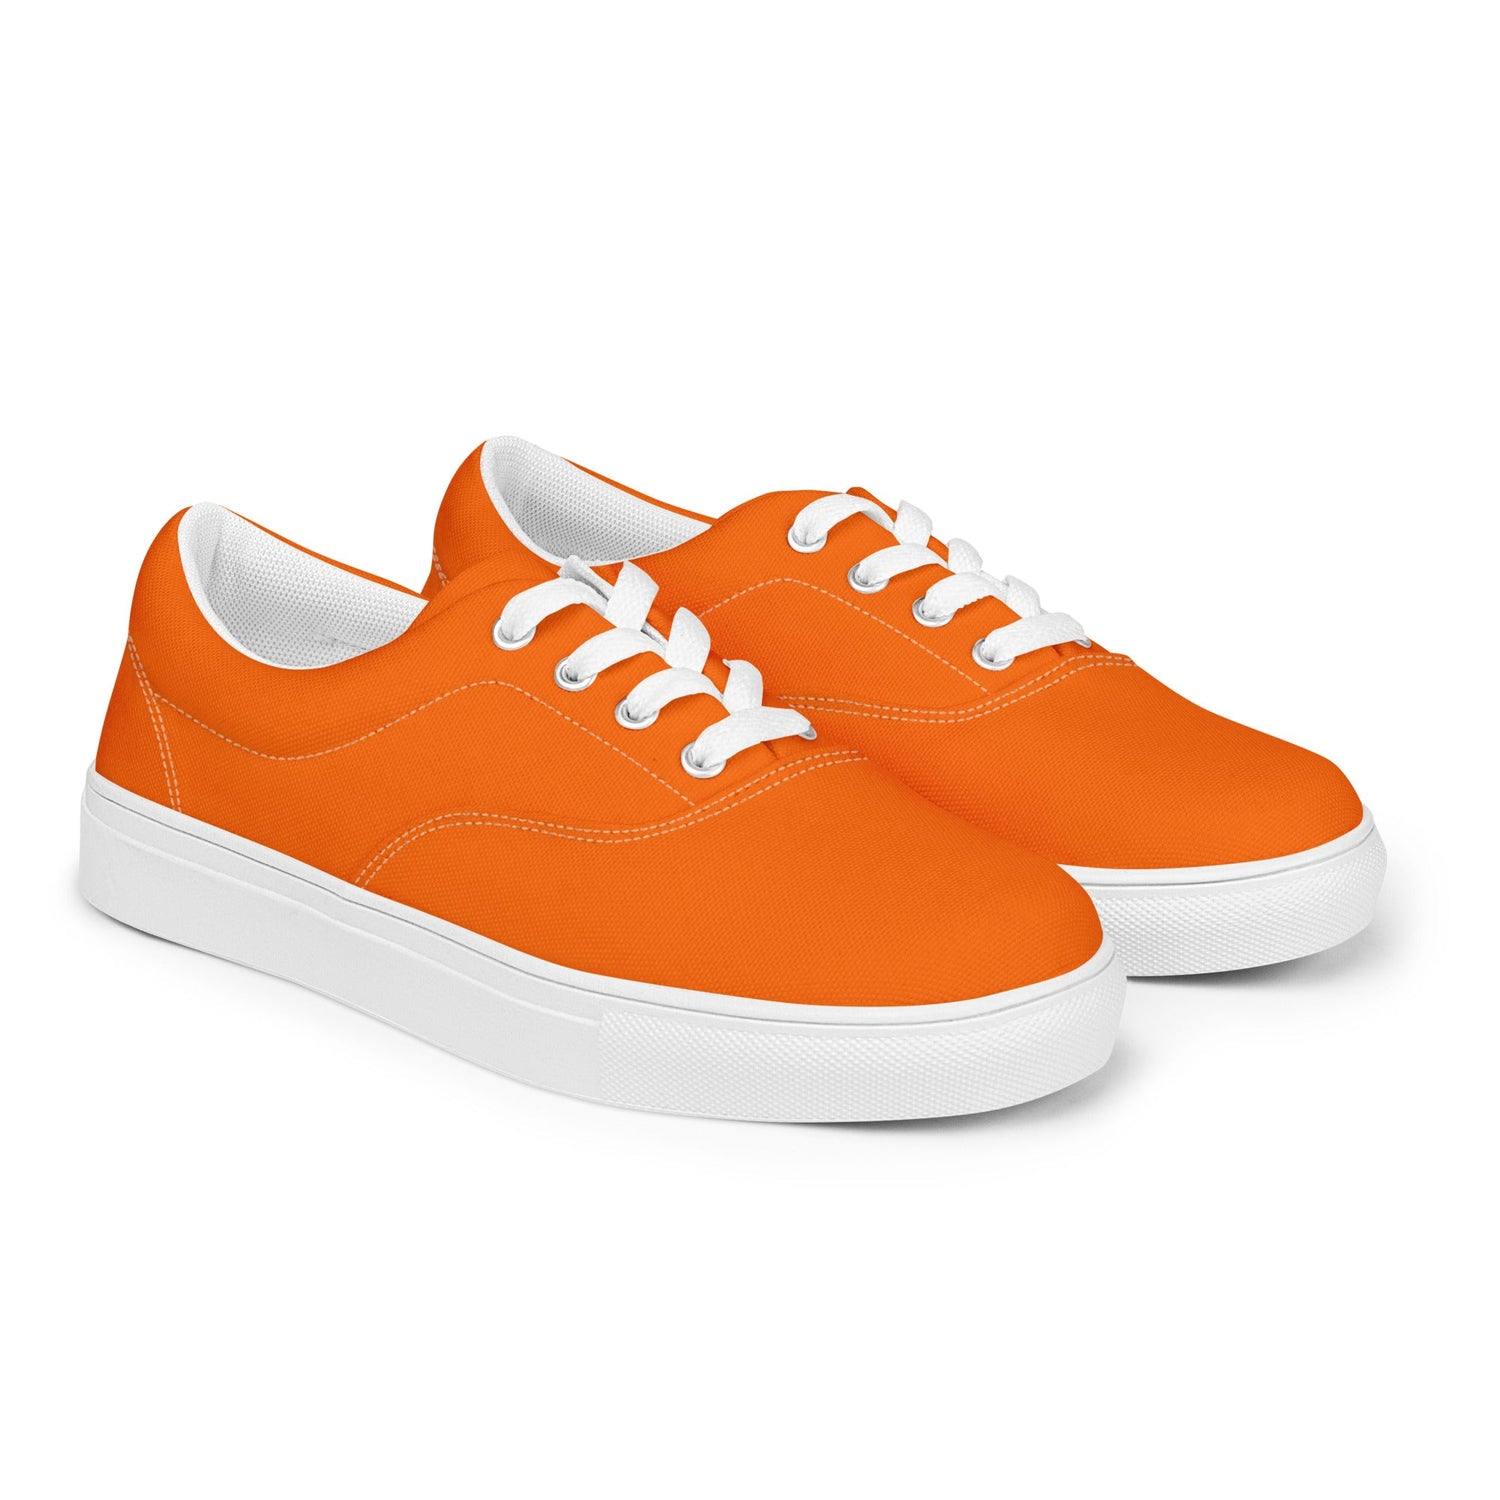 klasneakers Men’s lace-up canvas shoes - Electric Orange